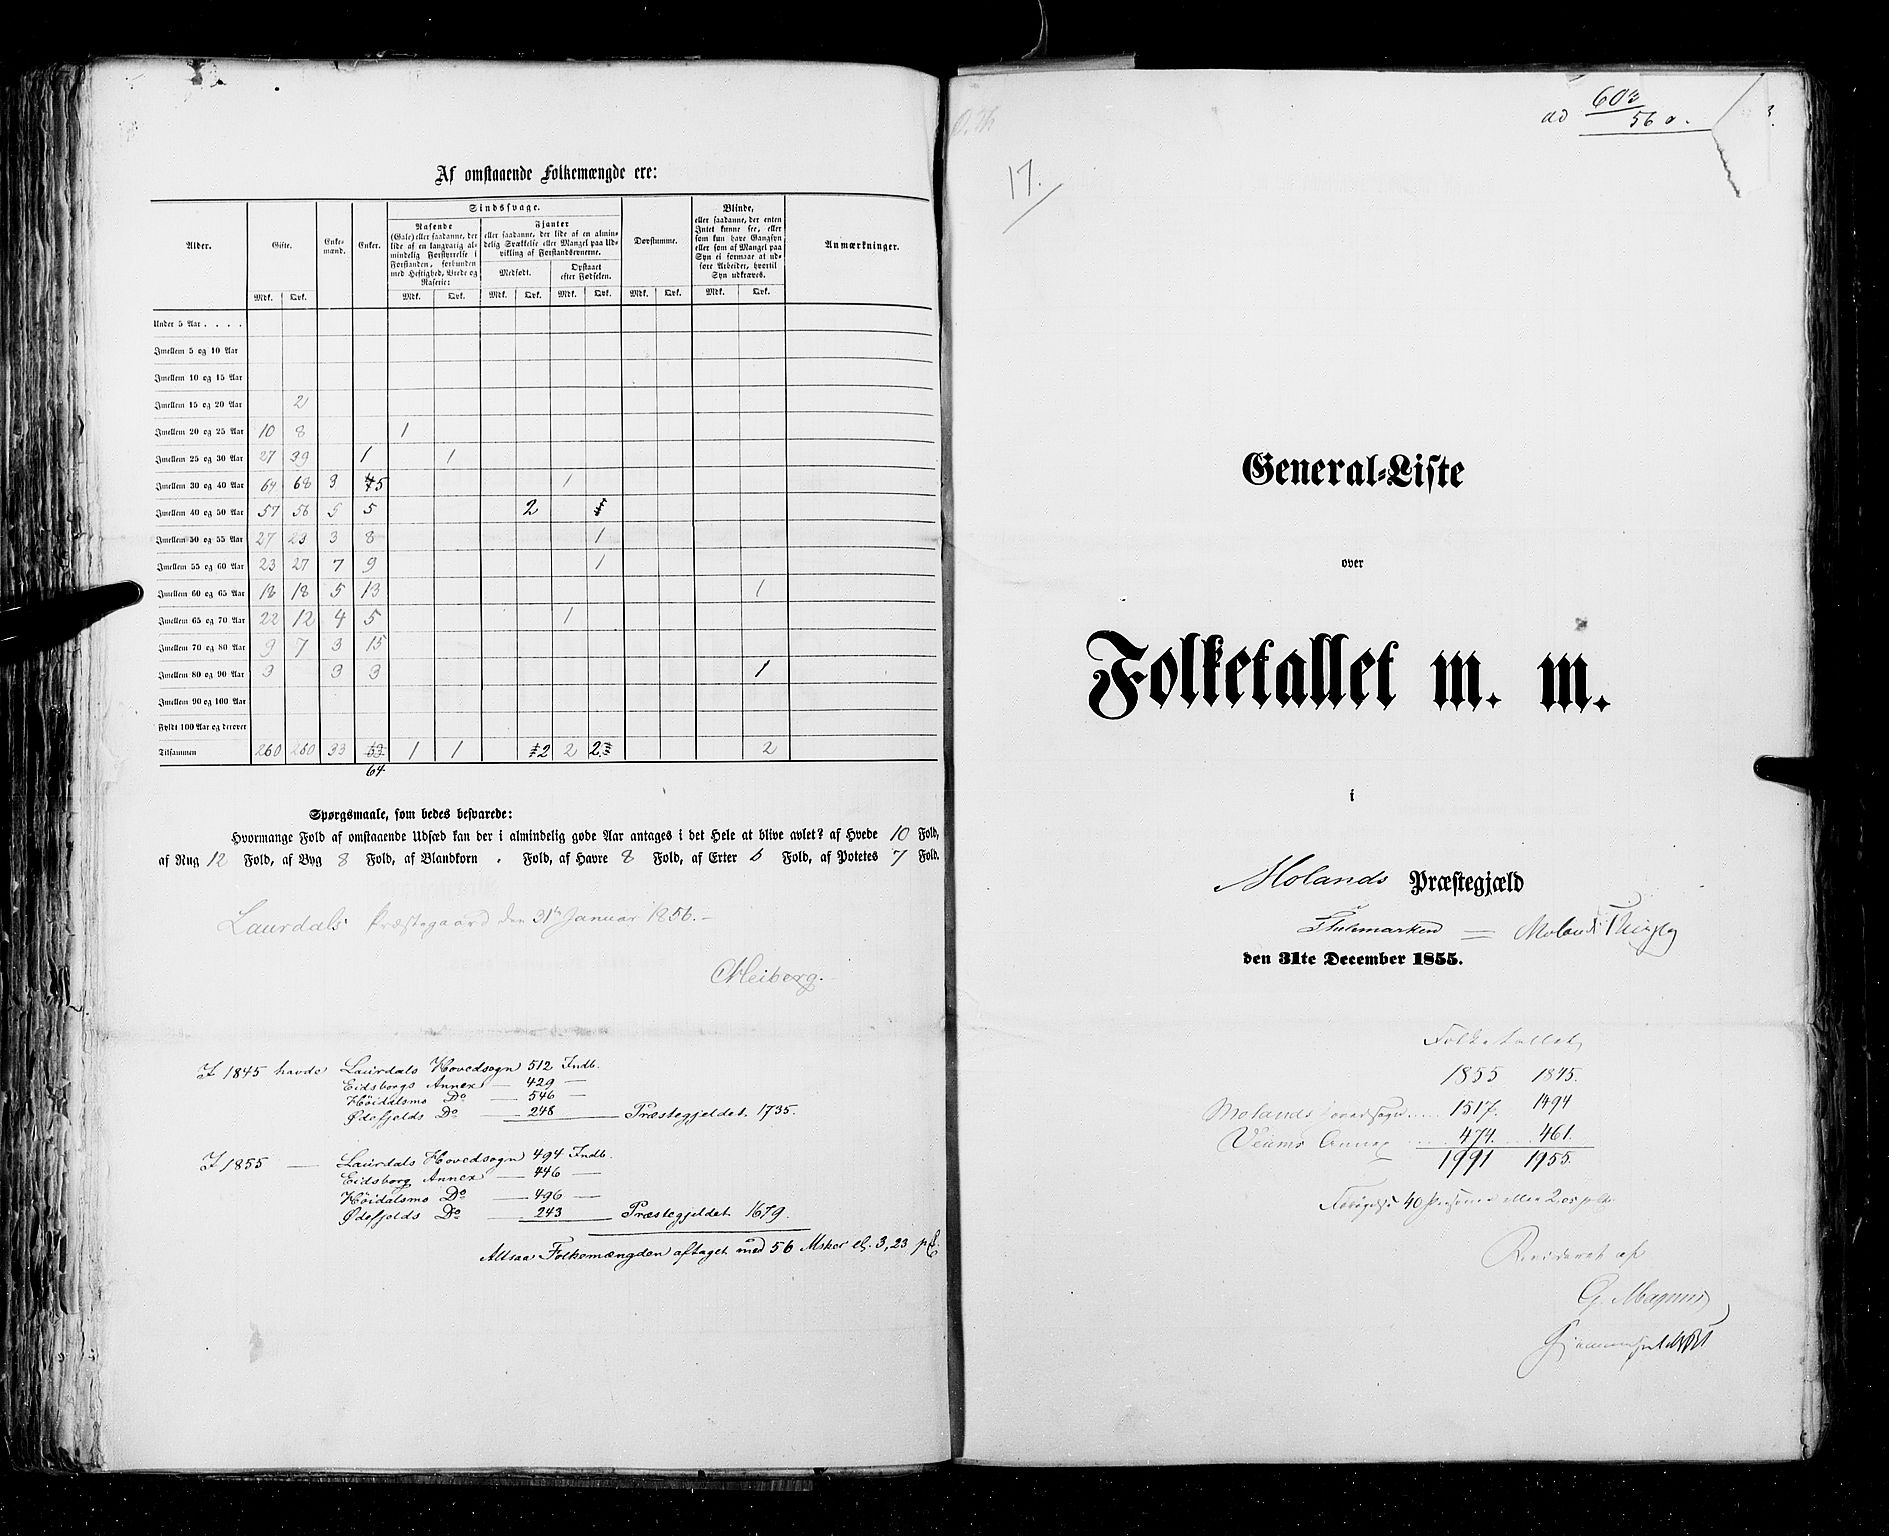 RA, Folketellingen 1855, bind 3: Bratsberg amt, Nedenes amt og Lister og Mandal amt, 1855, s. 93